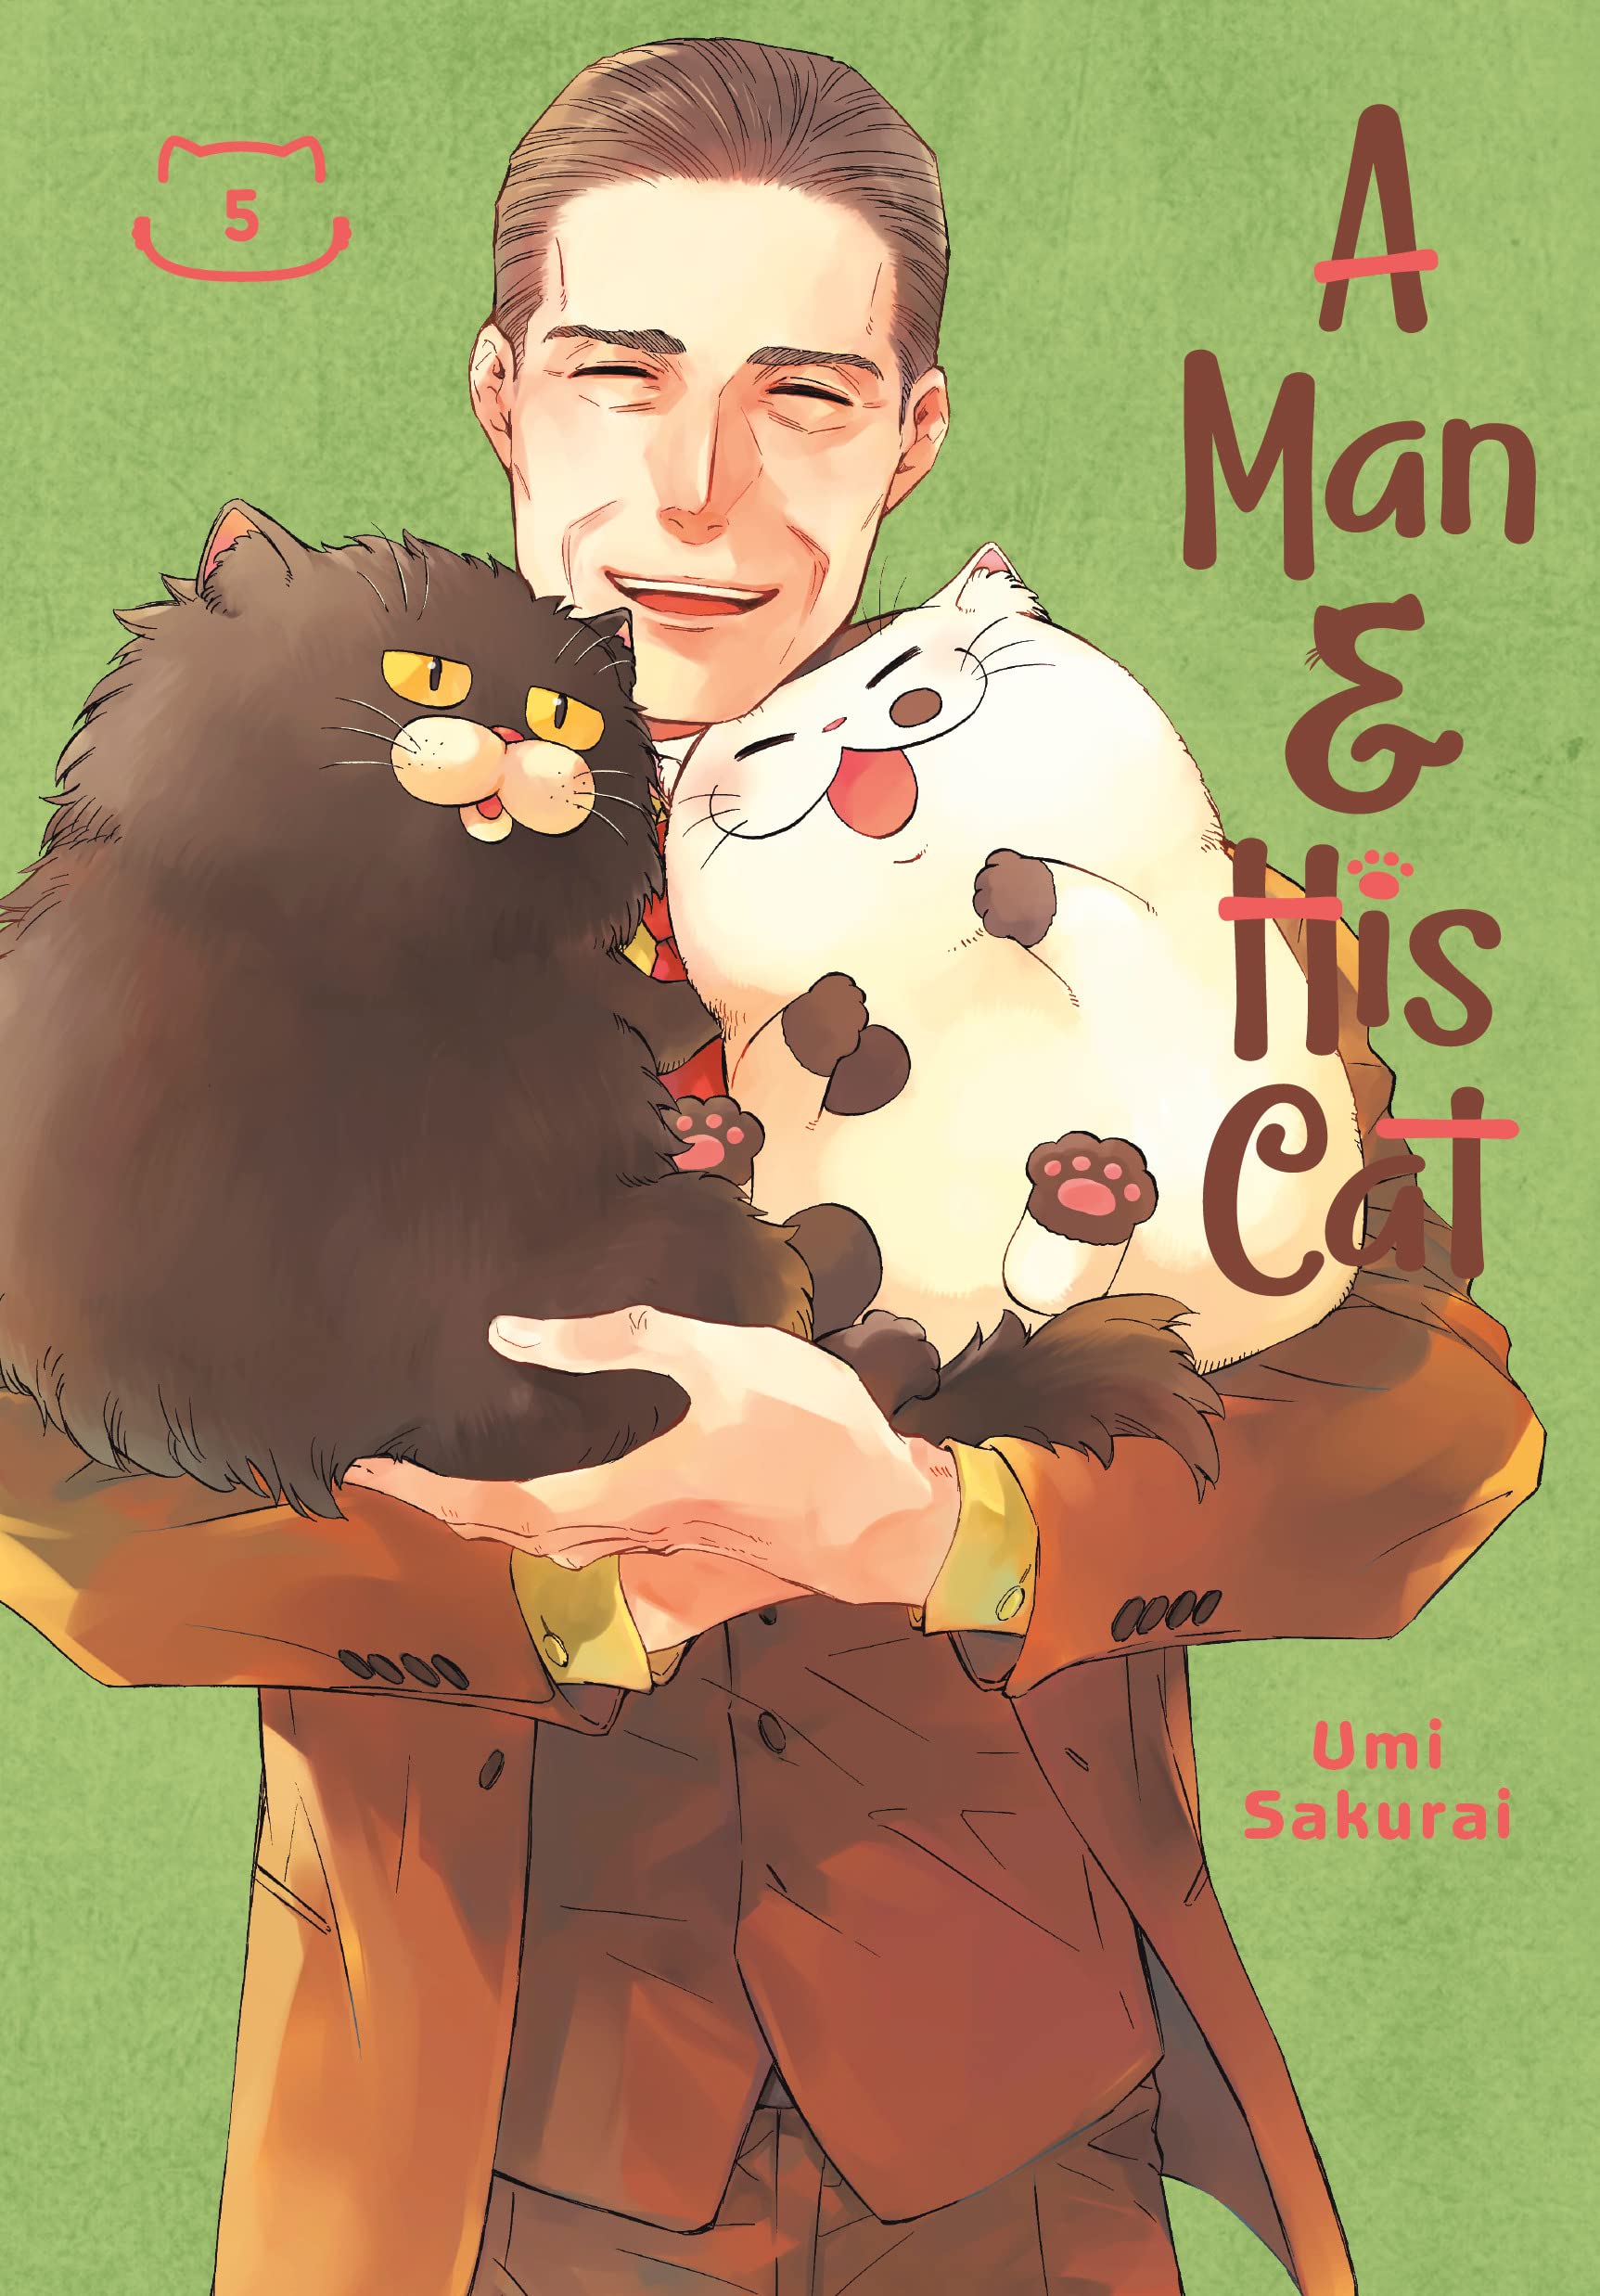 A Man and His Cat Vol. 05